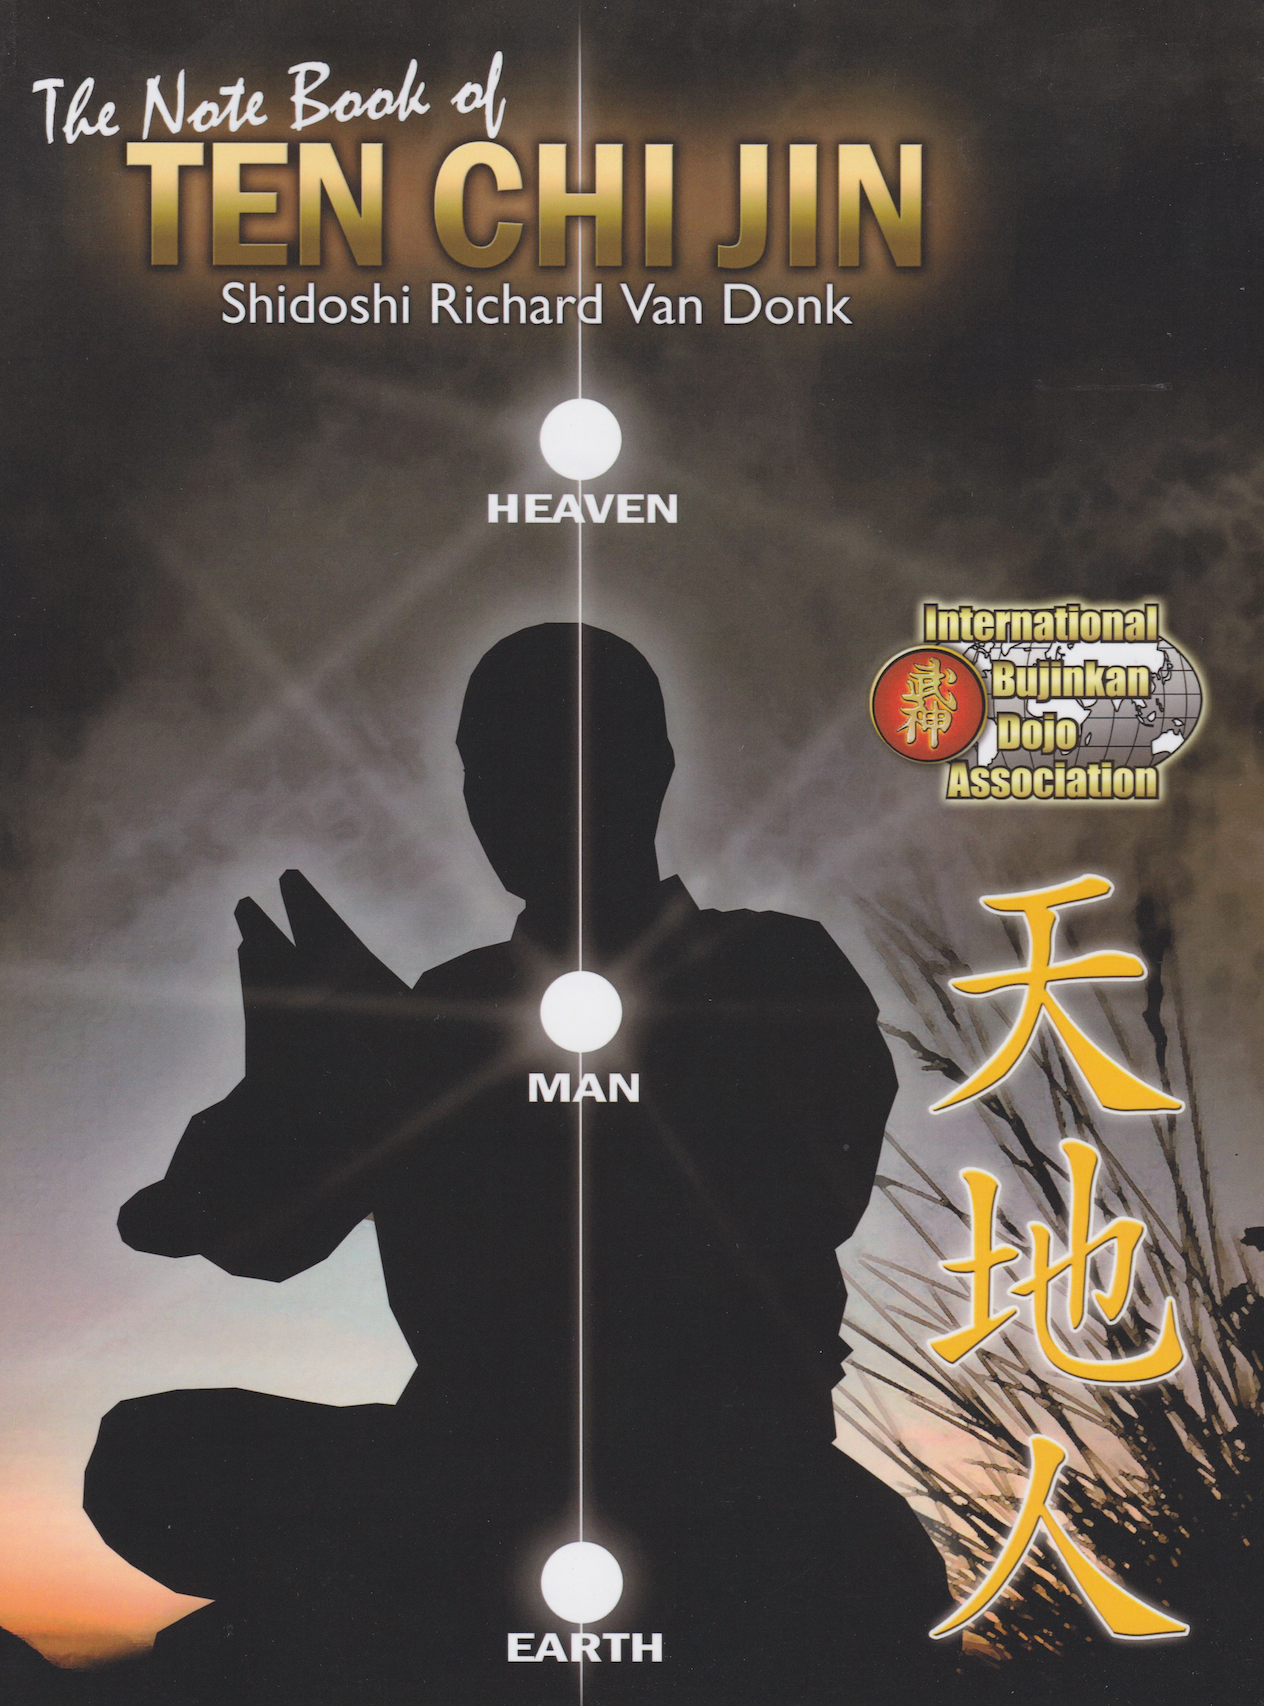 Libro de entrenamiento Ten Chi Jin de Richard Van Donk